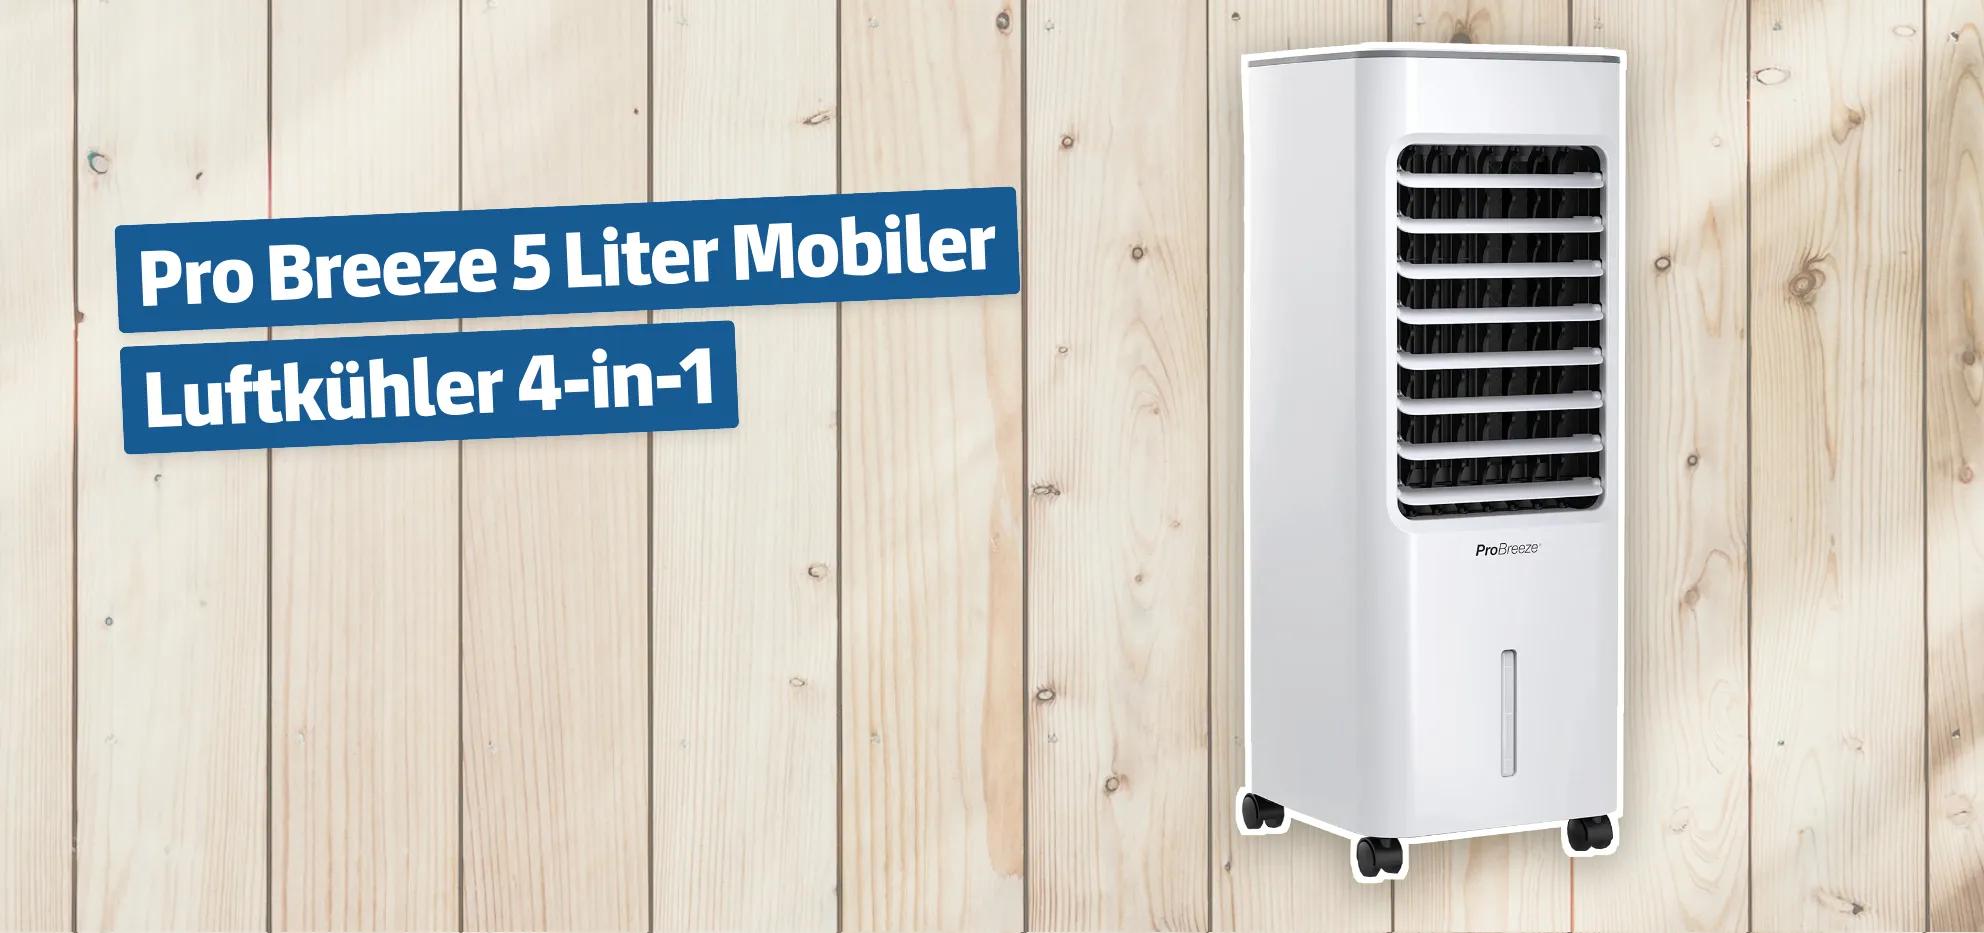 Pro Breeze 5 Liter Mobiler Luftkühler 4-in-1